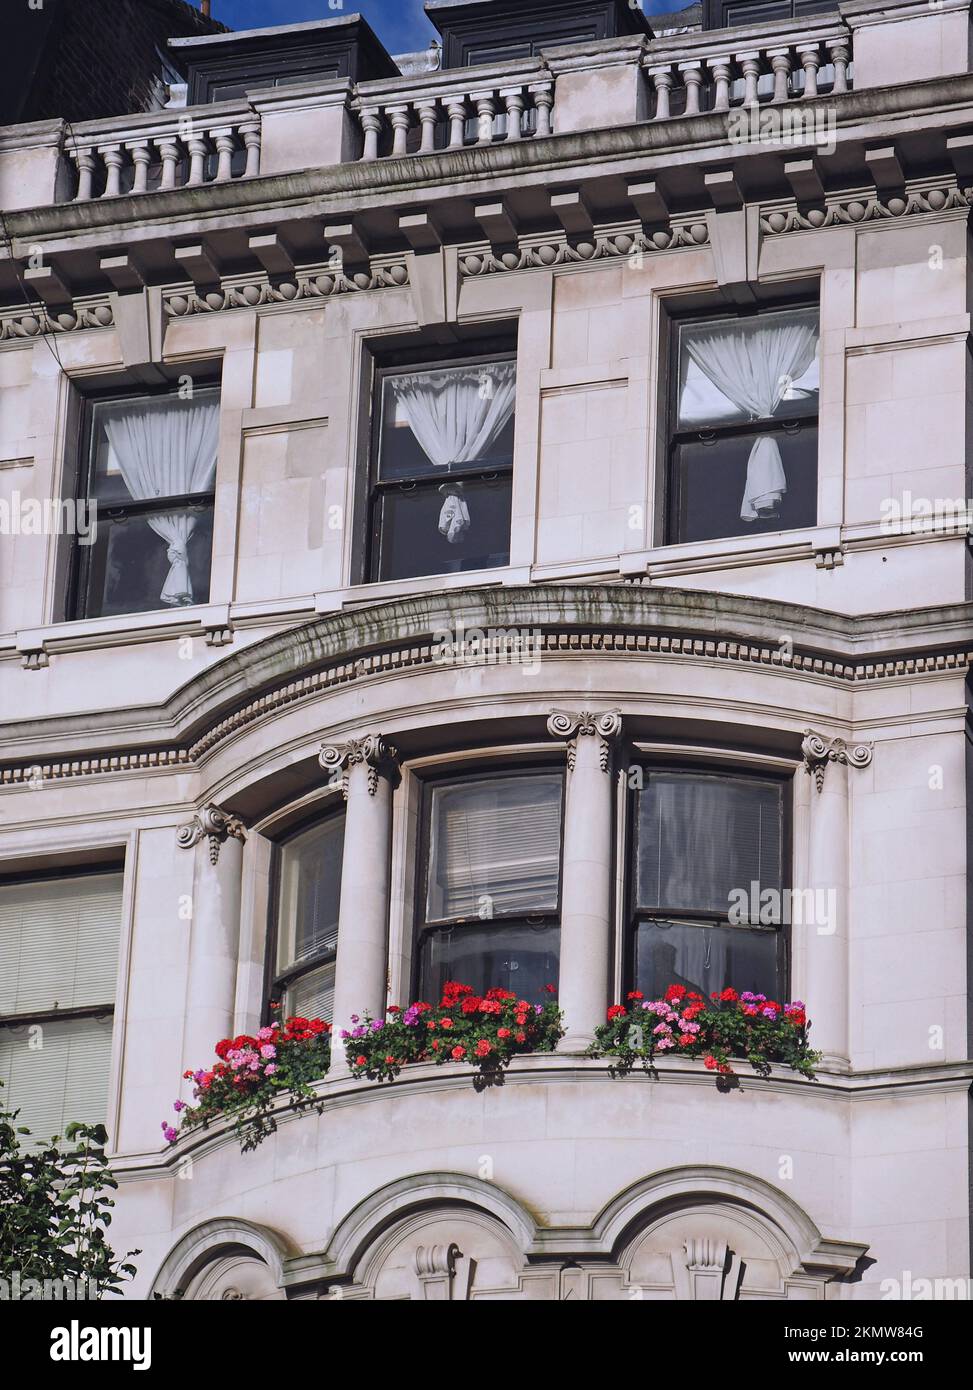 Edificio di appartamenti in vecchio stile barocco con fiori colorati in una finestra a bovindo Foto Stock